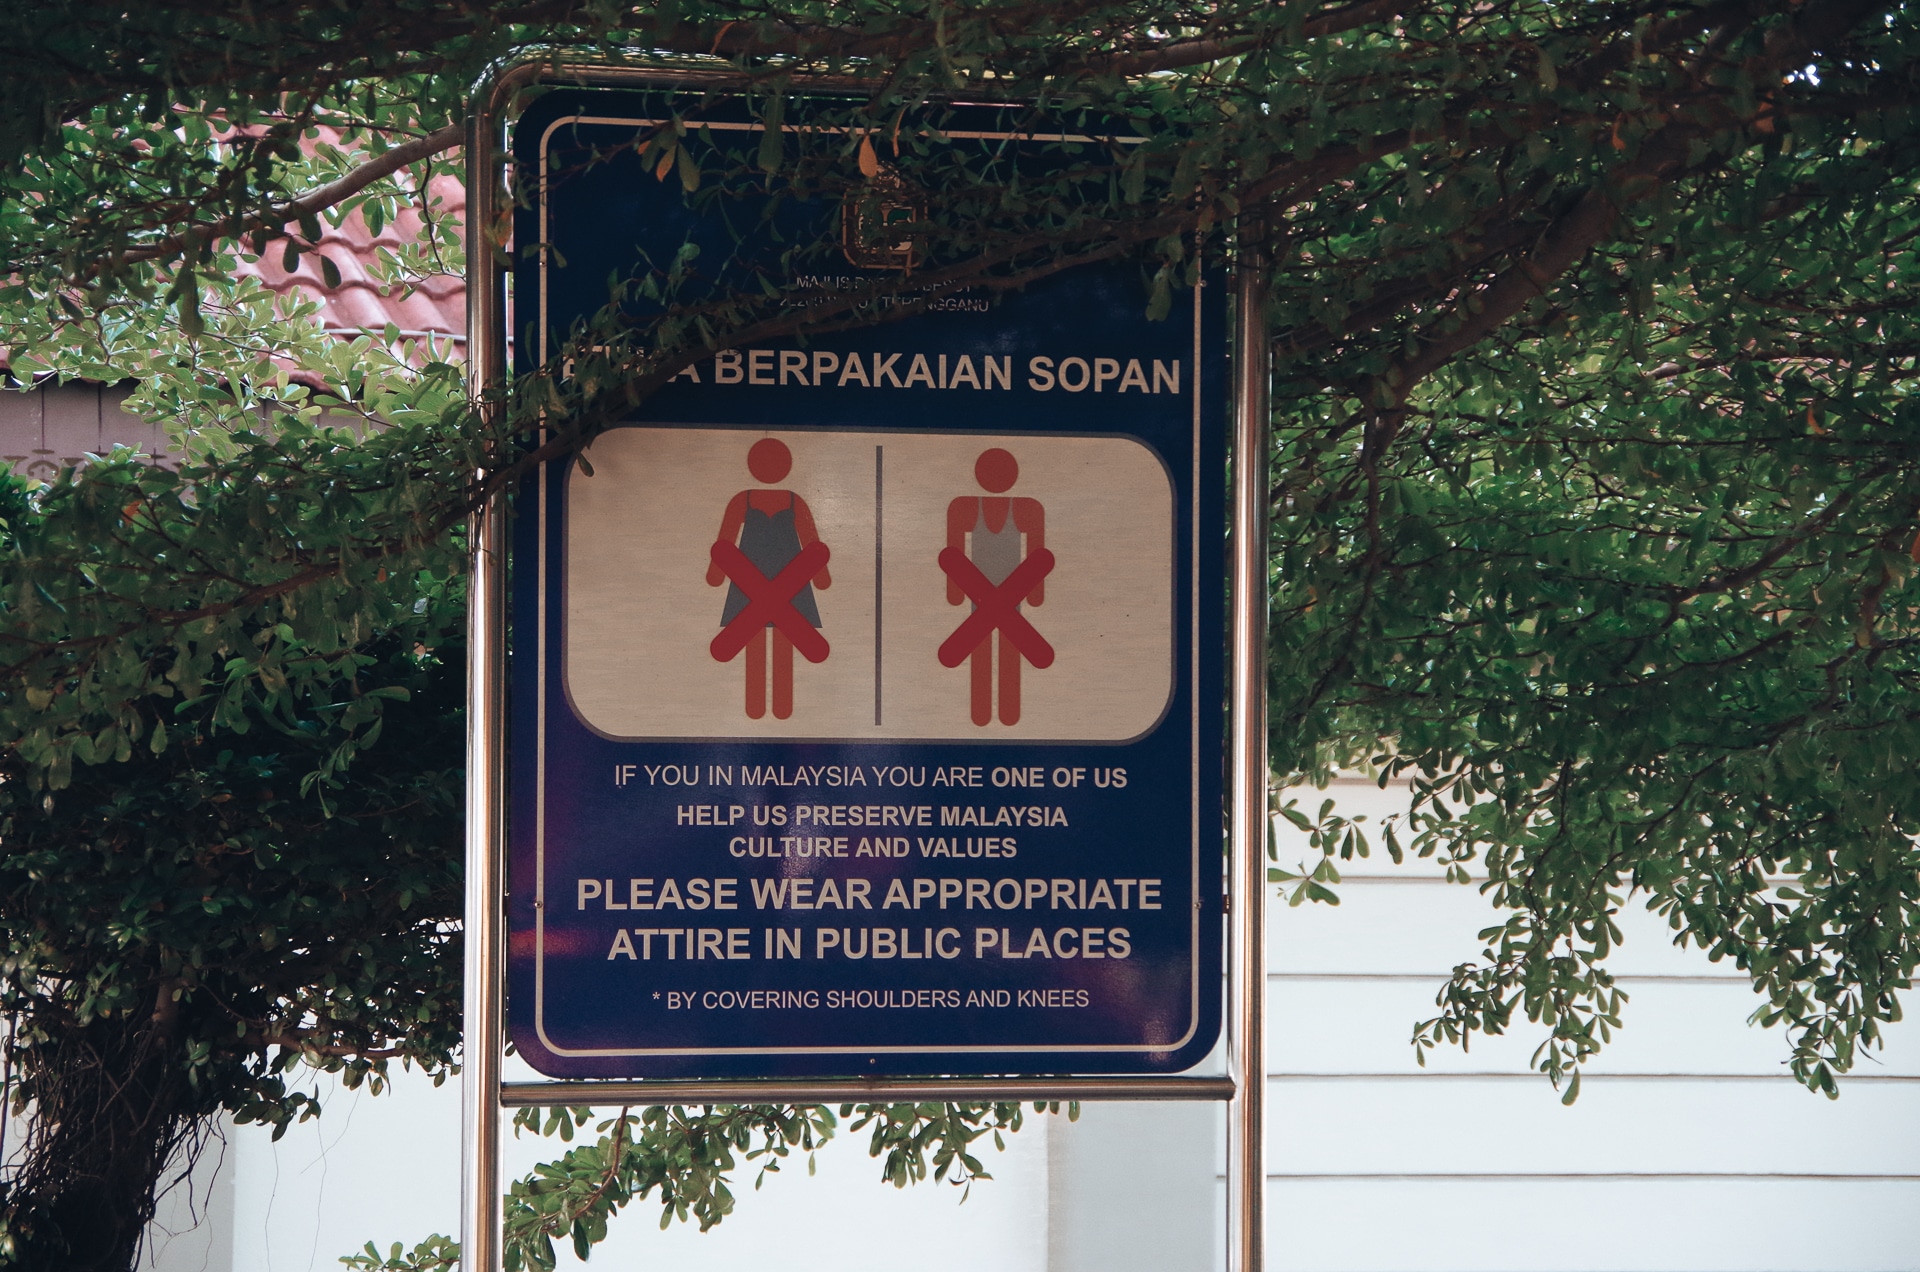 panneau indiquant la tenue à ne pas porter pour les femmes dans les espaces publics en Malaisie comment s'habiller en Malaisie